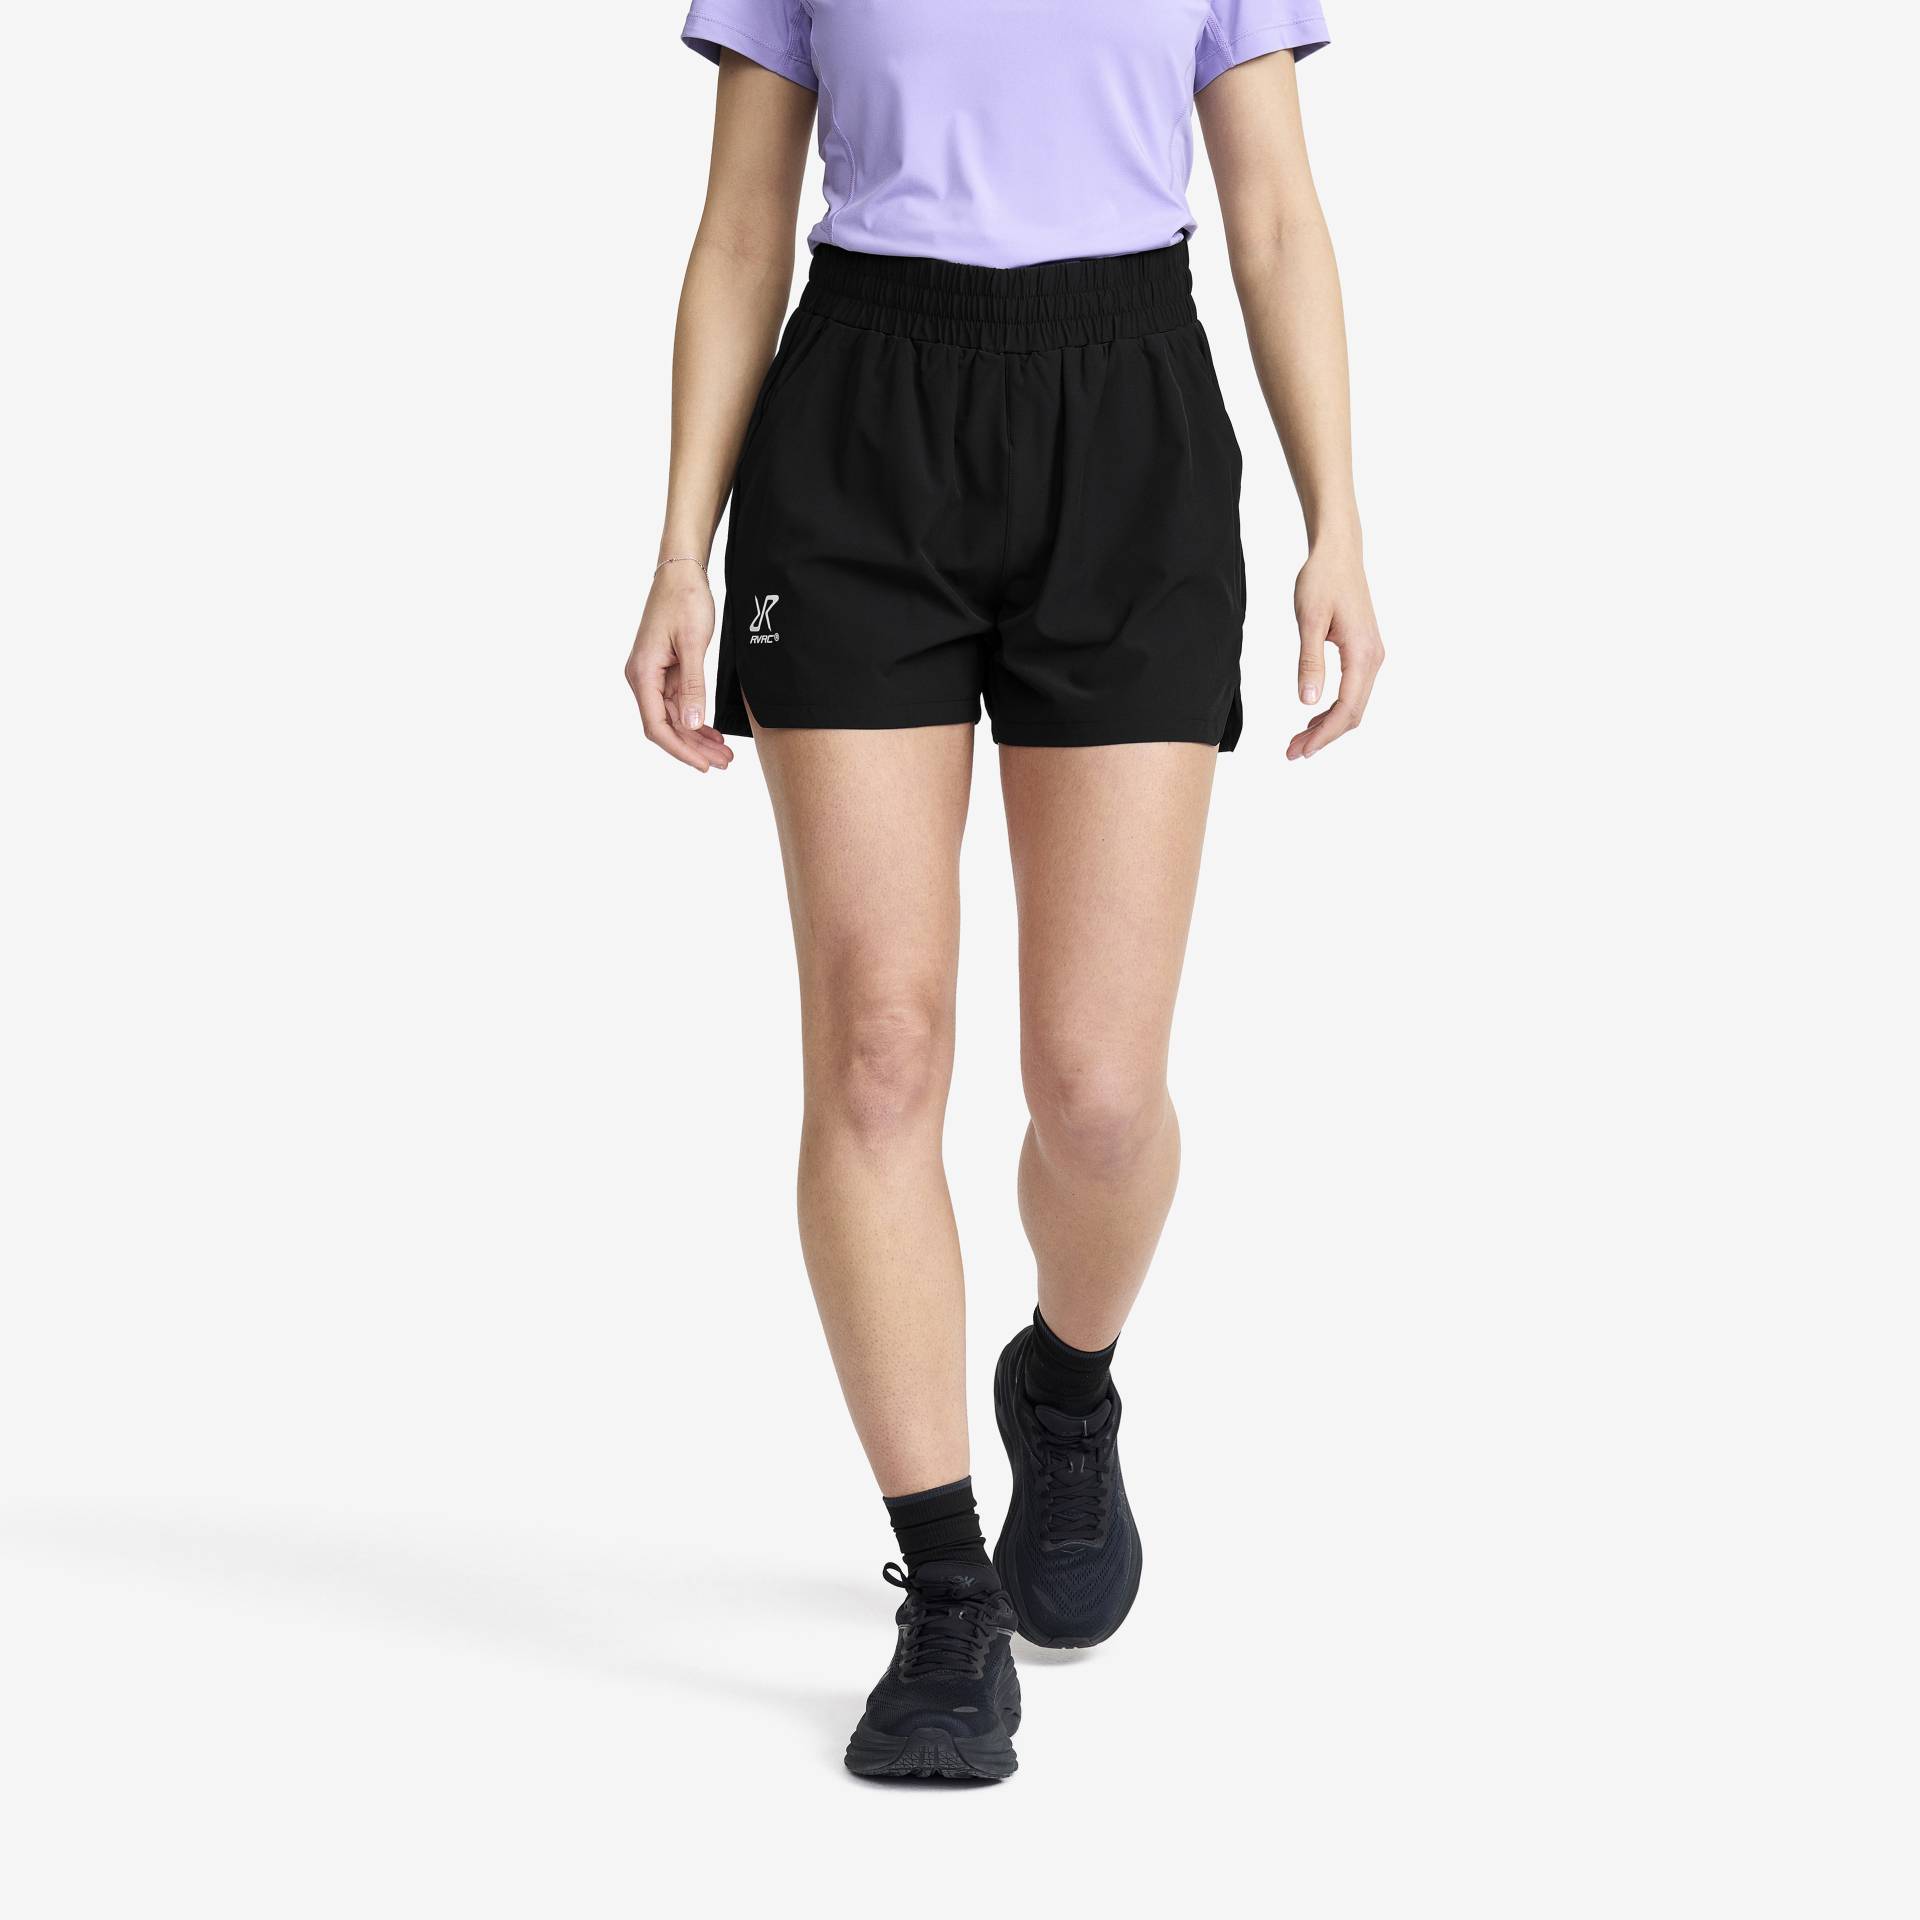 Impact Shorts Damen Black, Größe:2XL - Damen > Hosen > Shorts von RevolutionRace